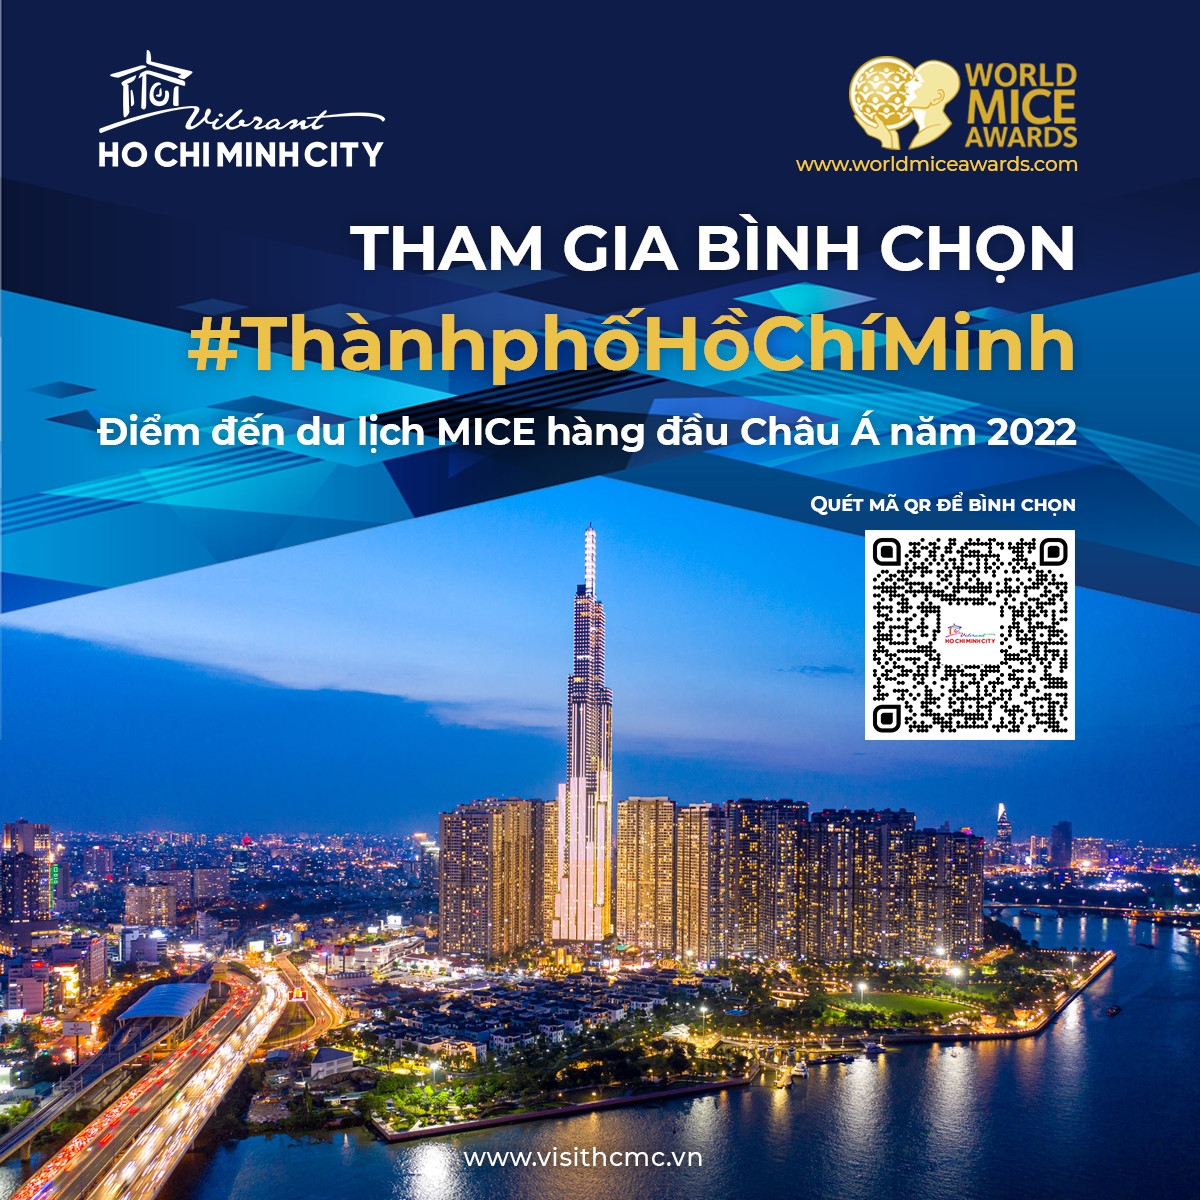 Cùng bình chọn để TP. Hồ Chí Minh trở thành “Điểm đến du lịch MICE hàng đầu châu Á” năm 2022